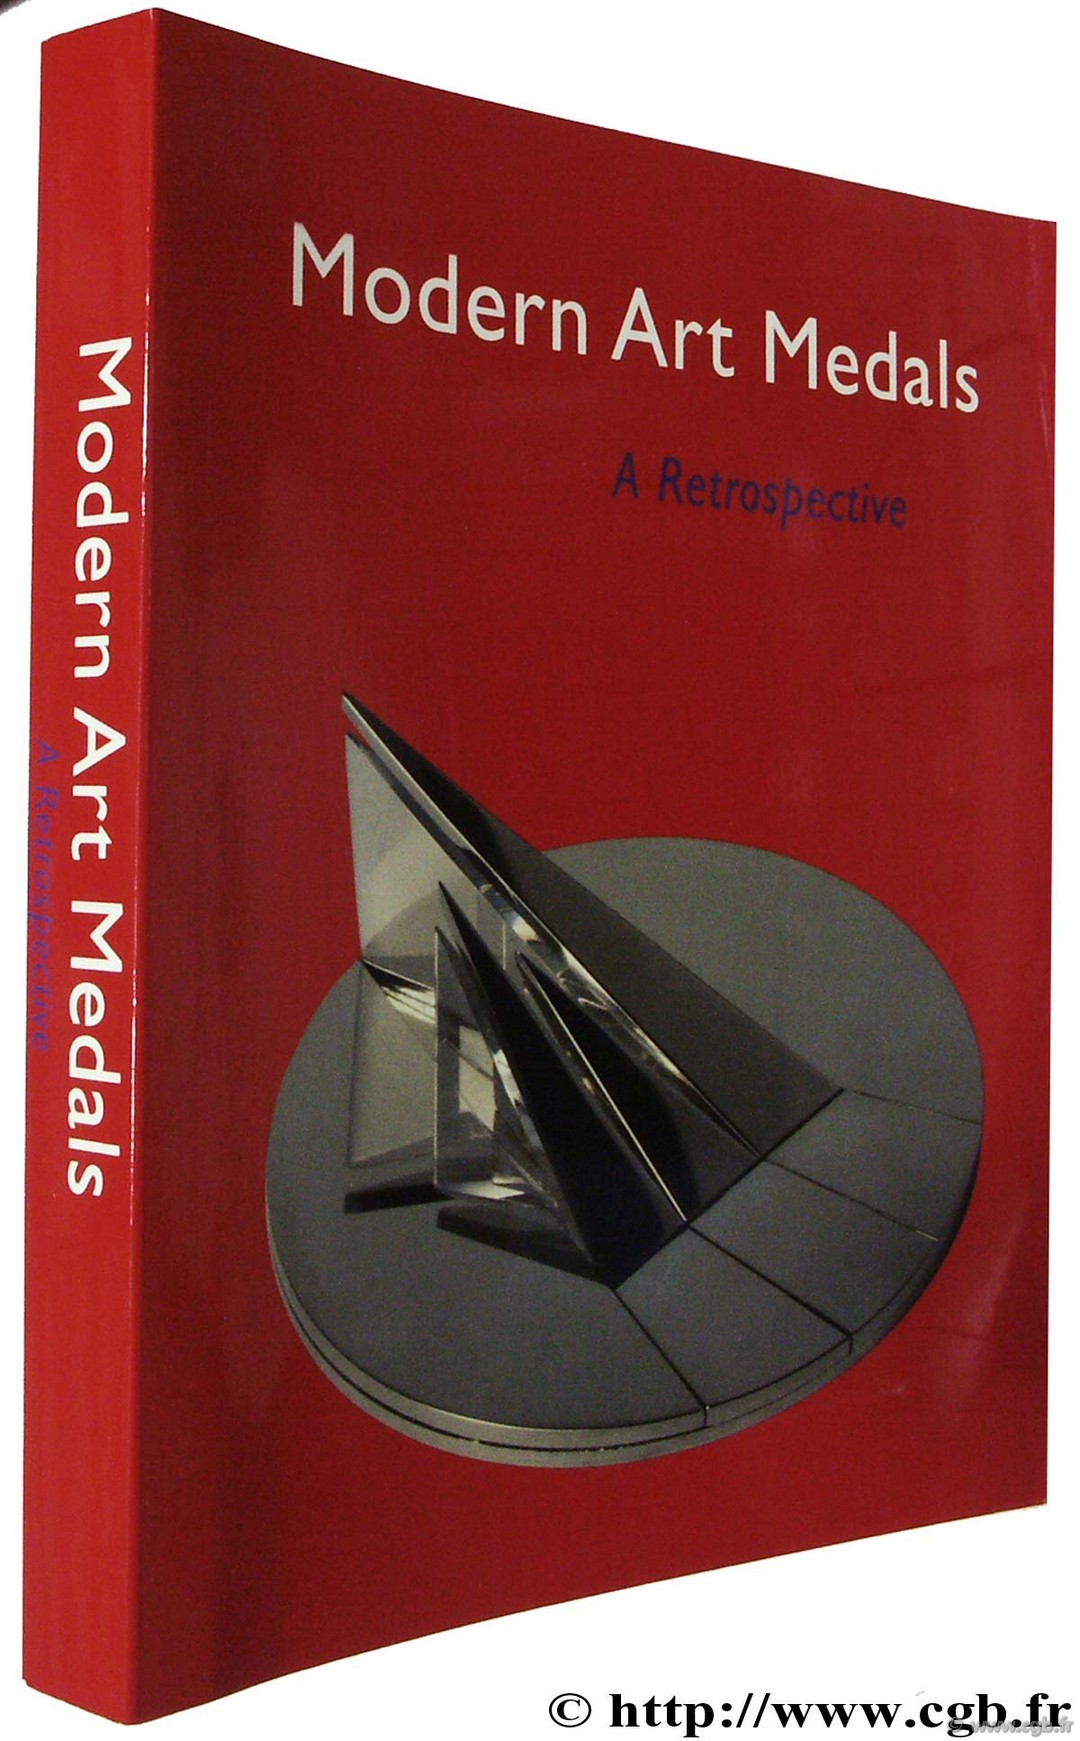 Modern Art Medals, a Retrospective Exposition